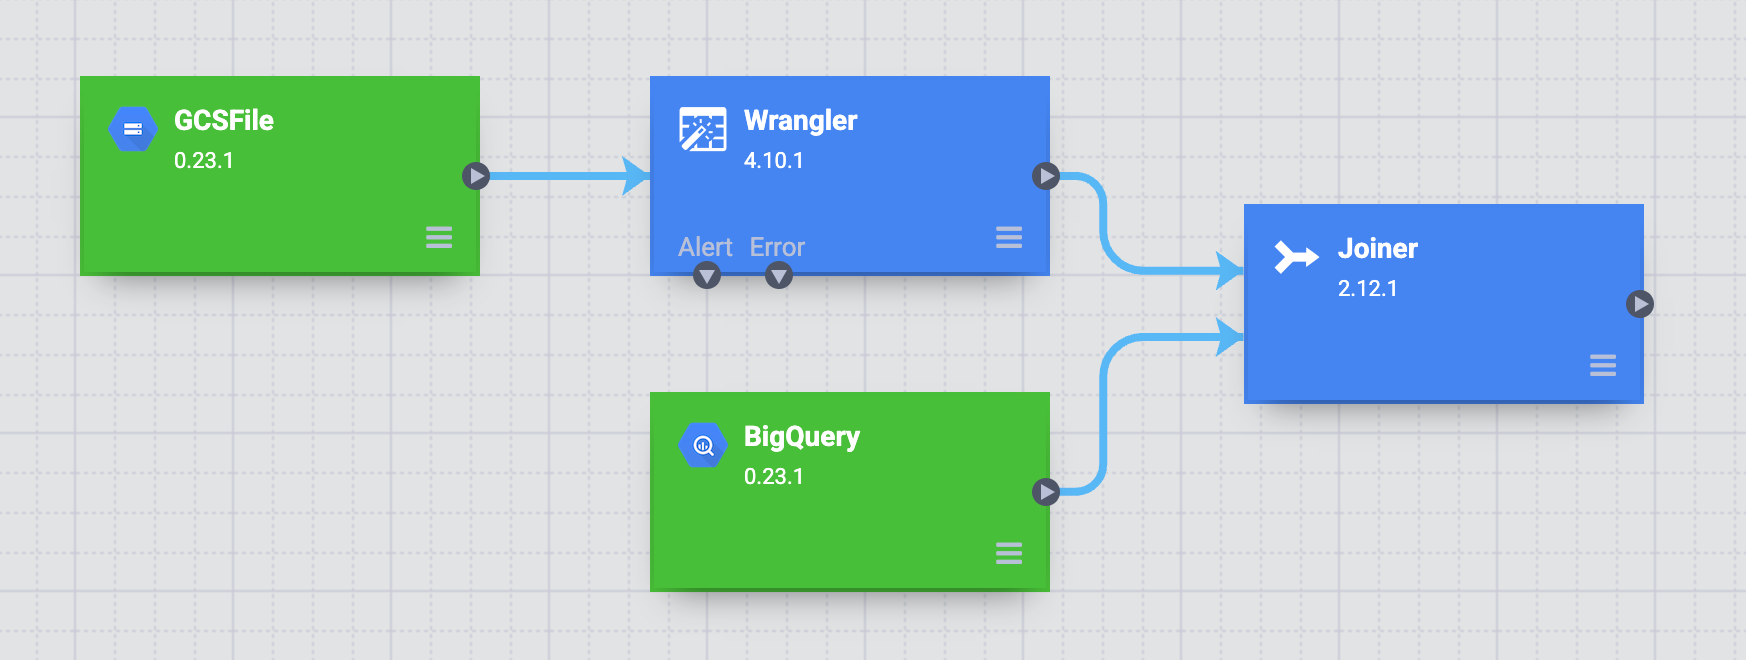 将 Wrangler 和 BigQuery 节点联接到“联接”节点